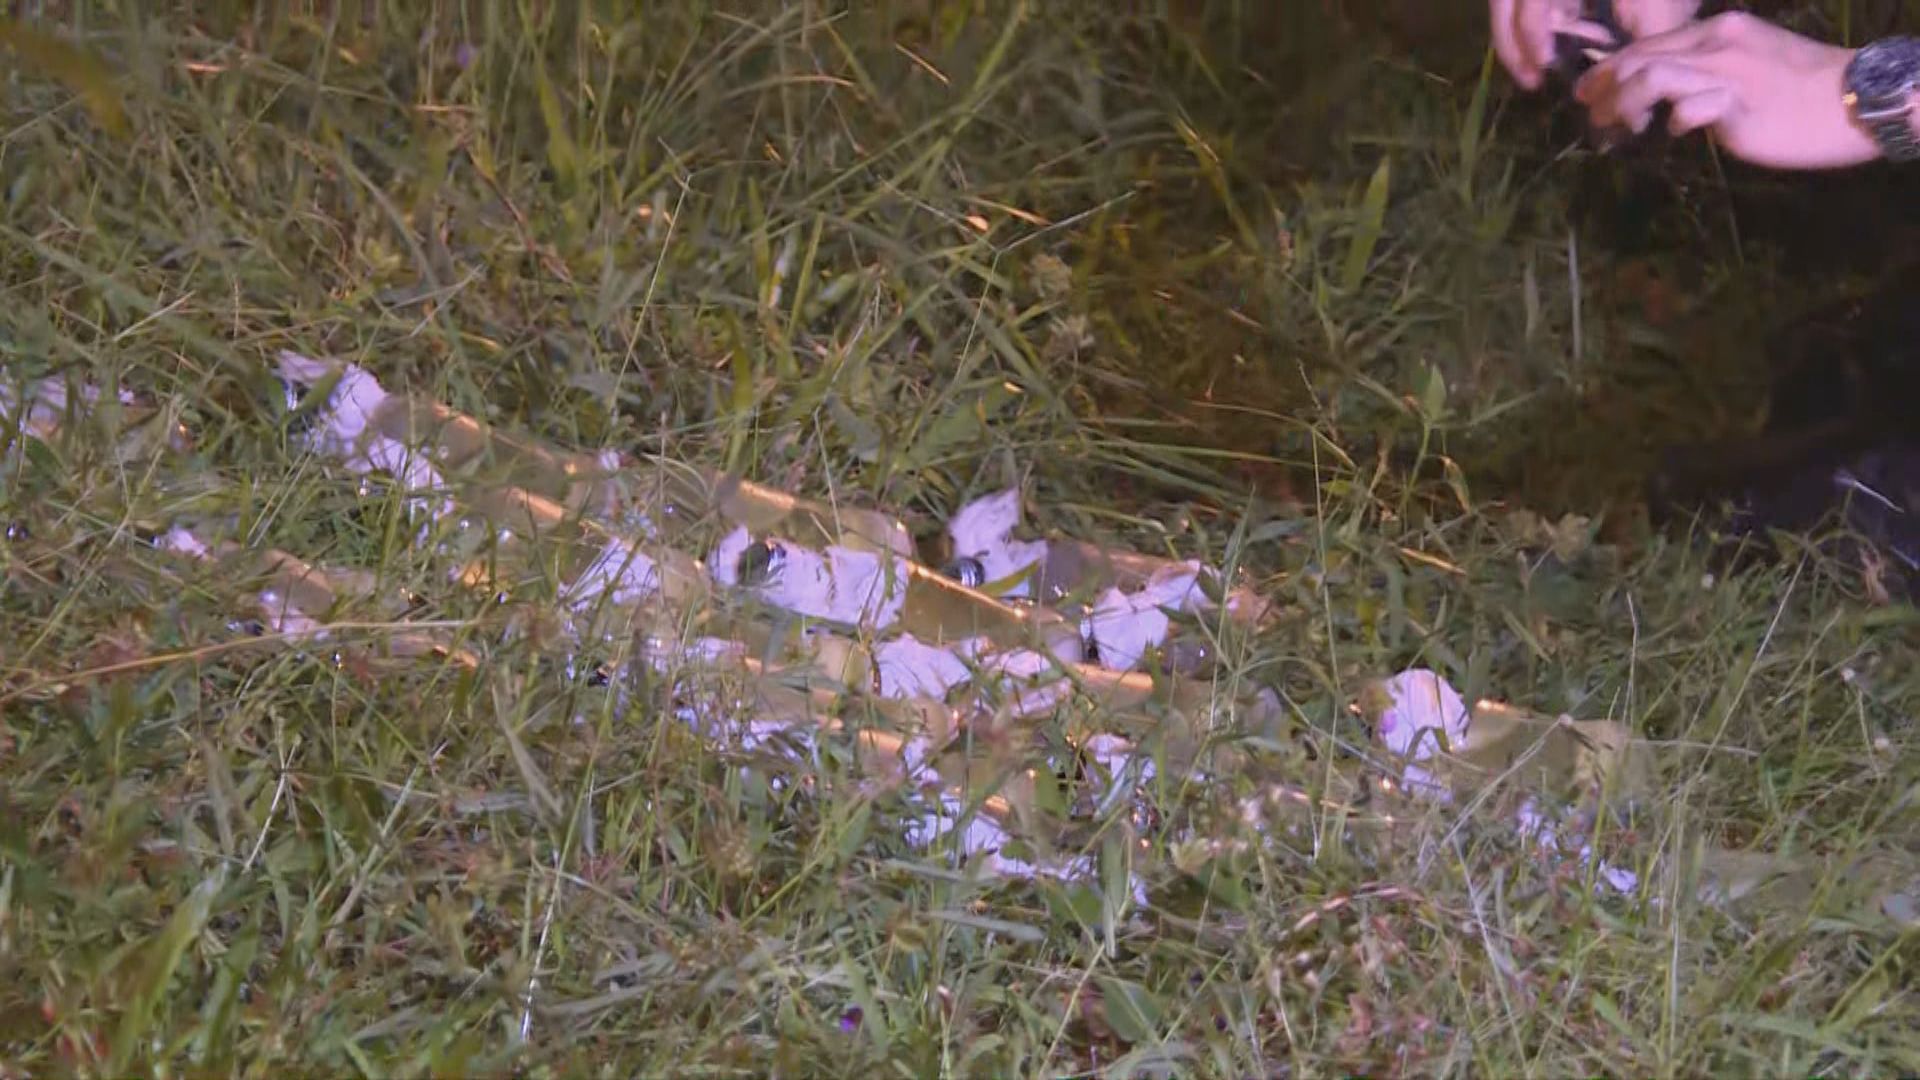 沙田中央公園草叢發現20支懷疑汽油彈